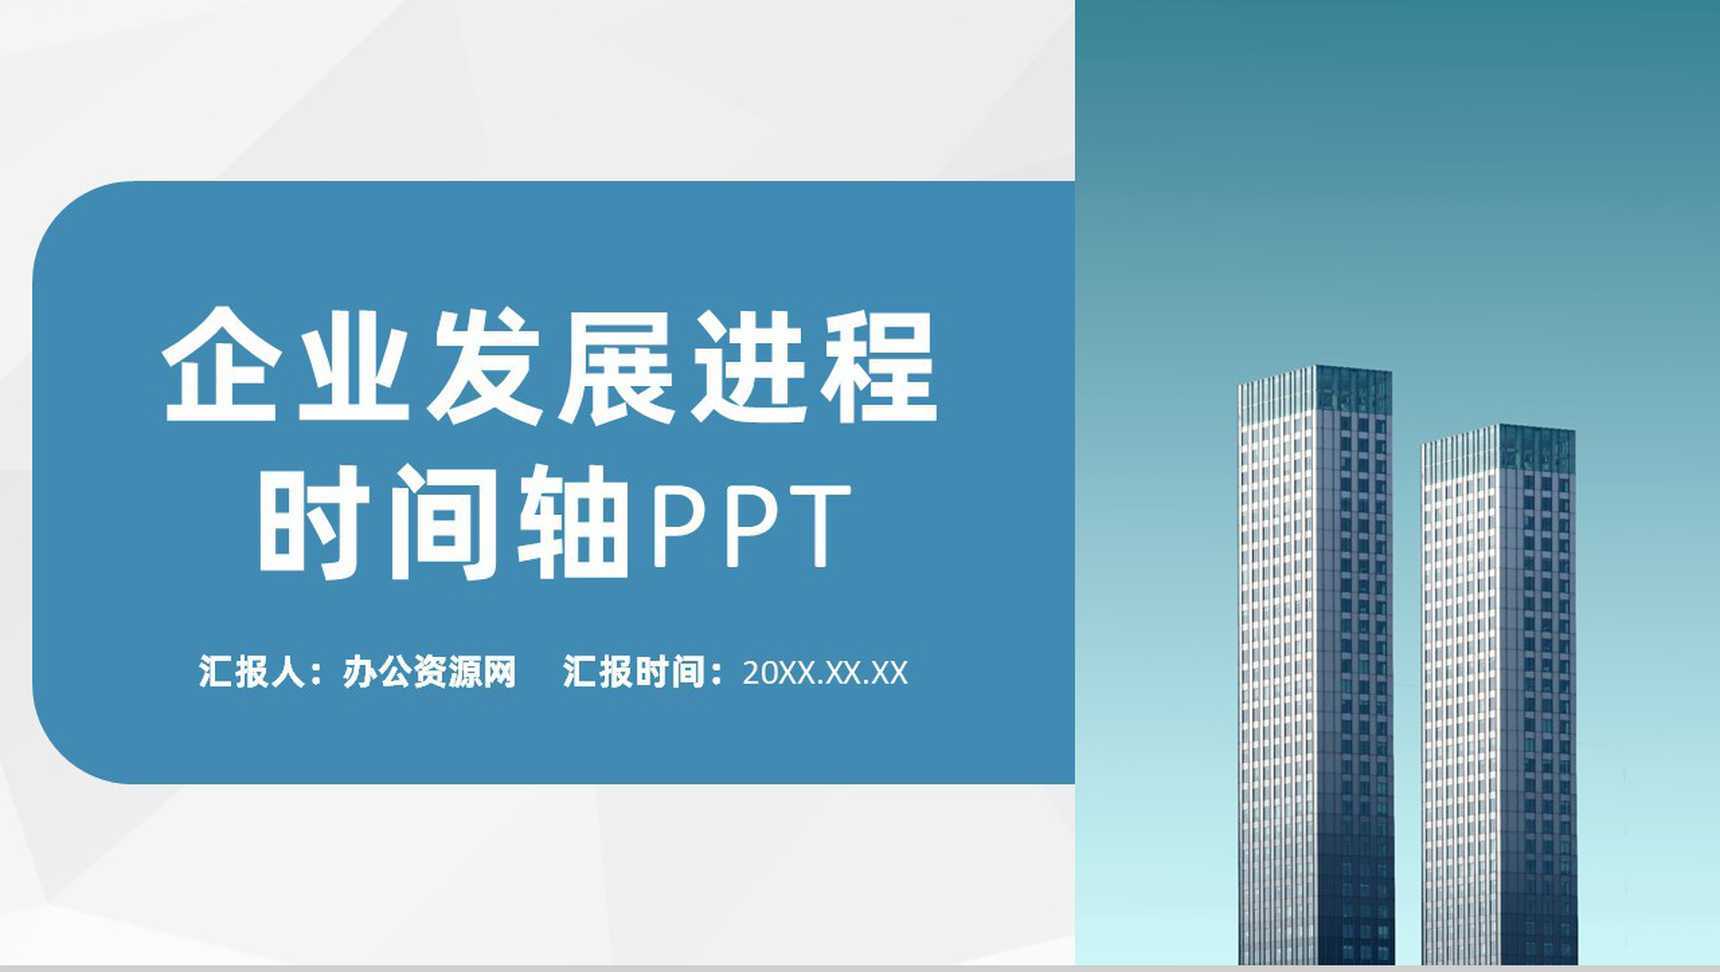 浅蓝色商务风格企业公司发展进程时间轴PPT模板